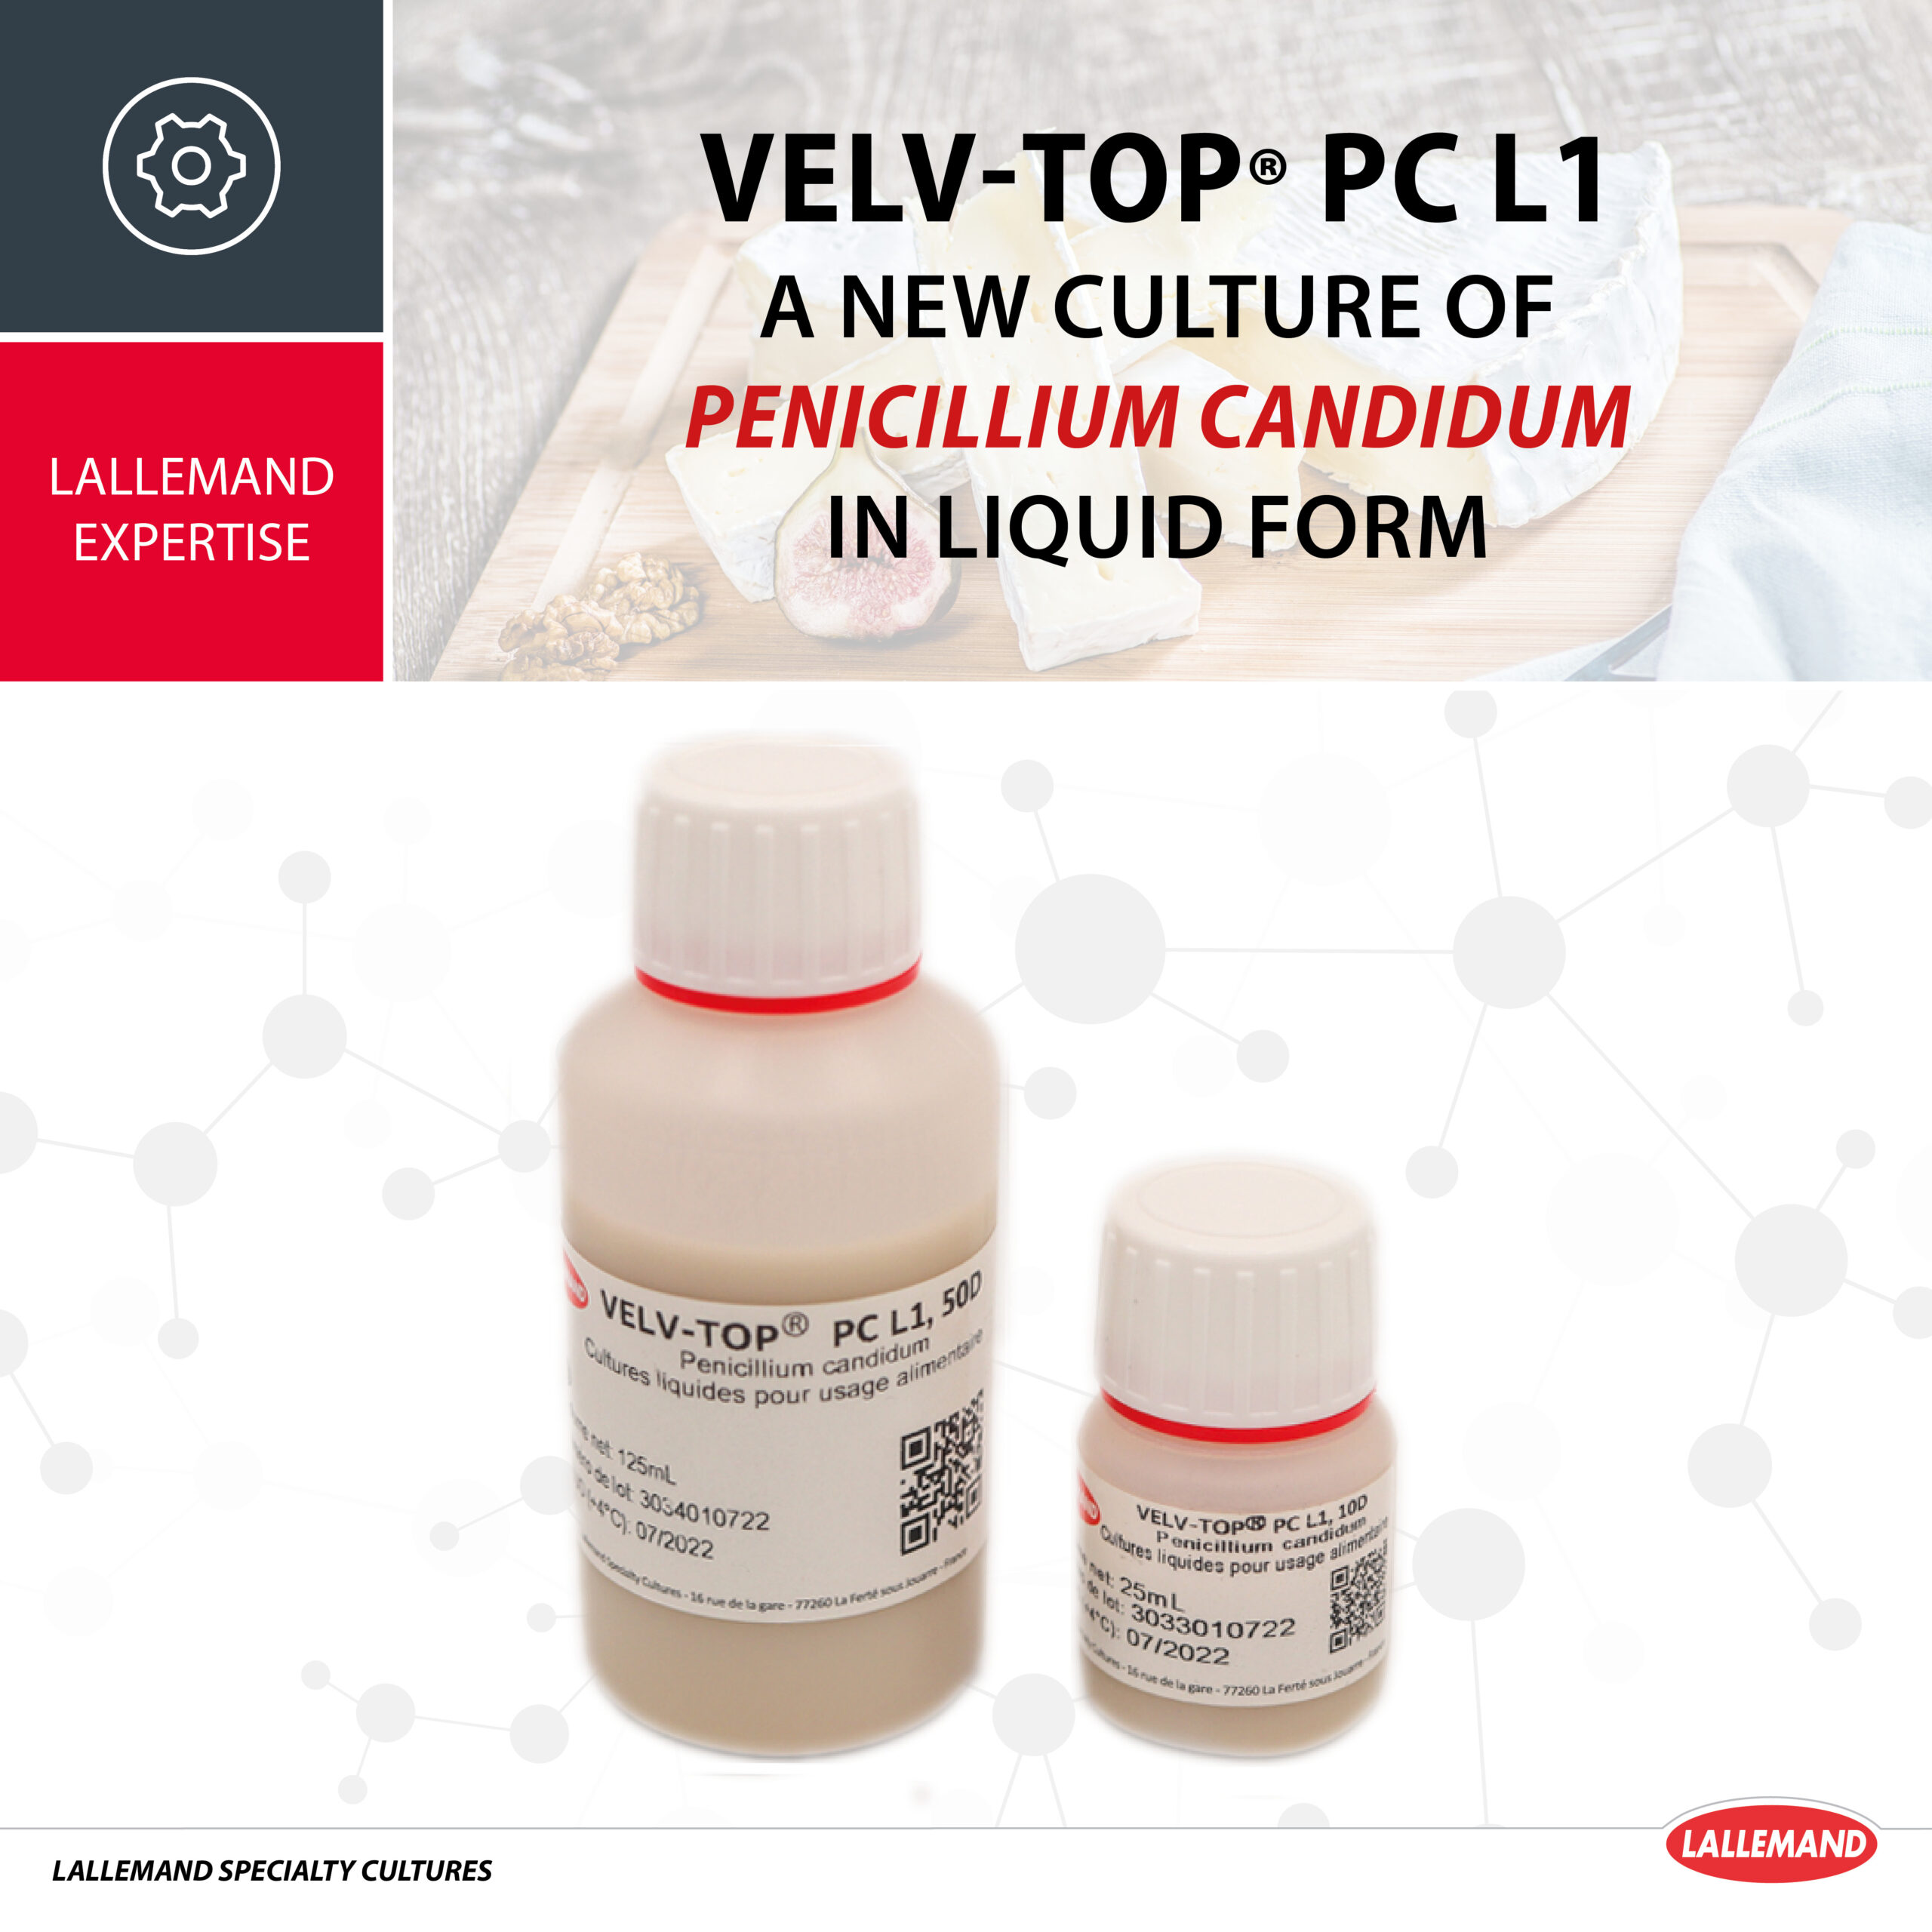 Launch of our very first Penicillium candidum in liquid form